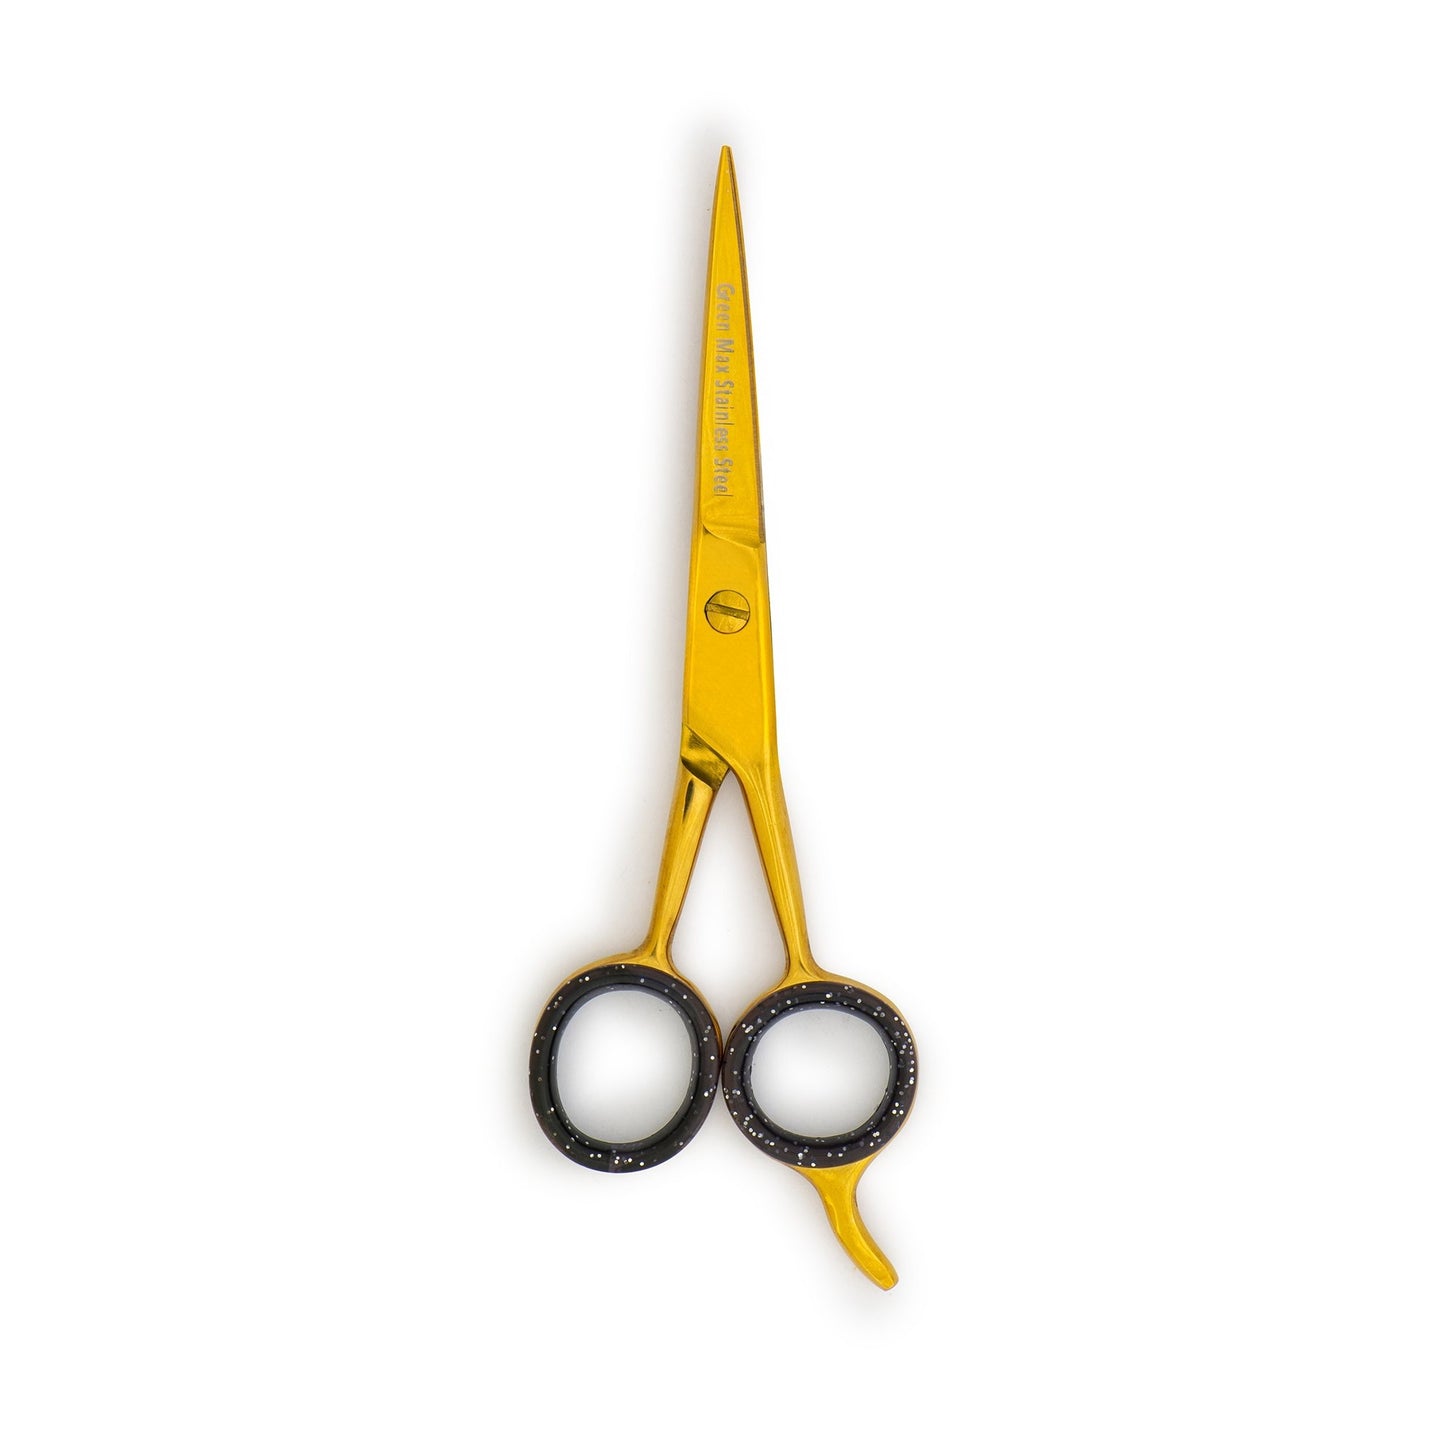 Tesoura de corte de cabelo, tesoura de barbeiro profissional de ponta navalha. (OURO) 5,5 pol.